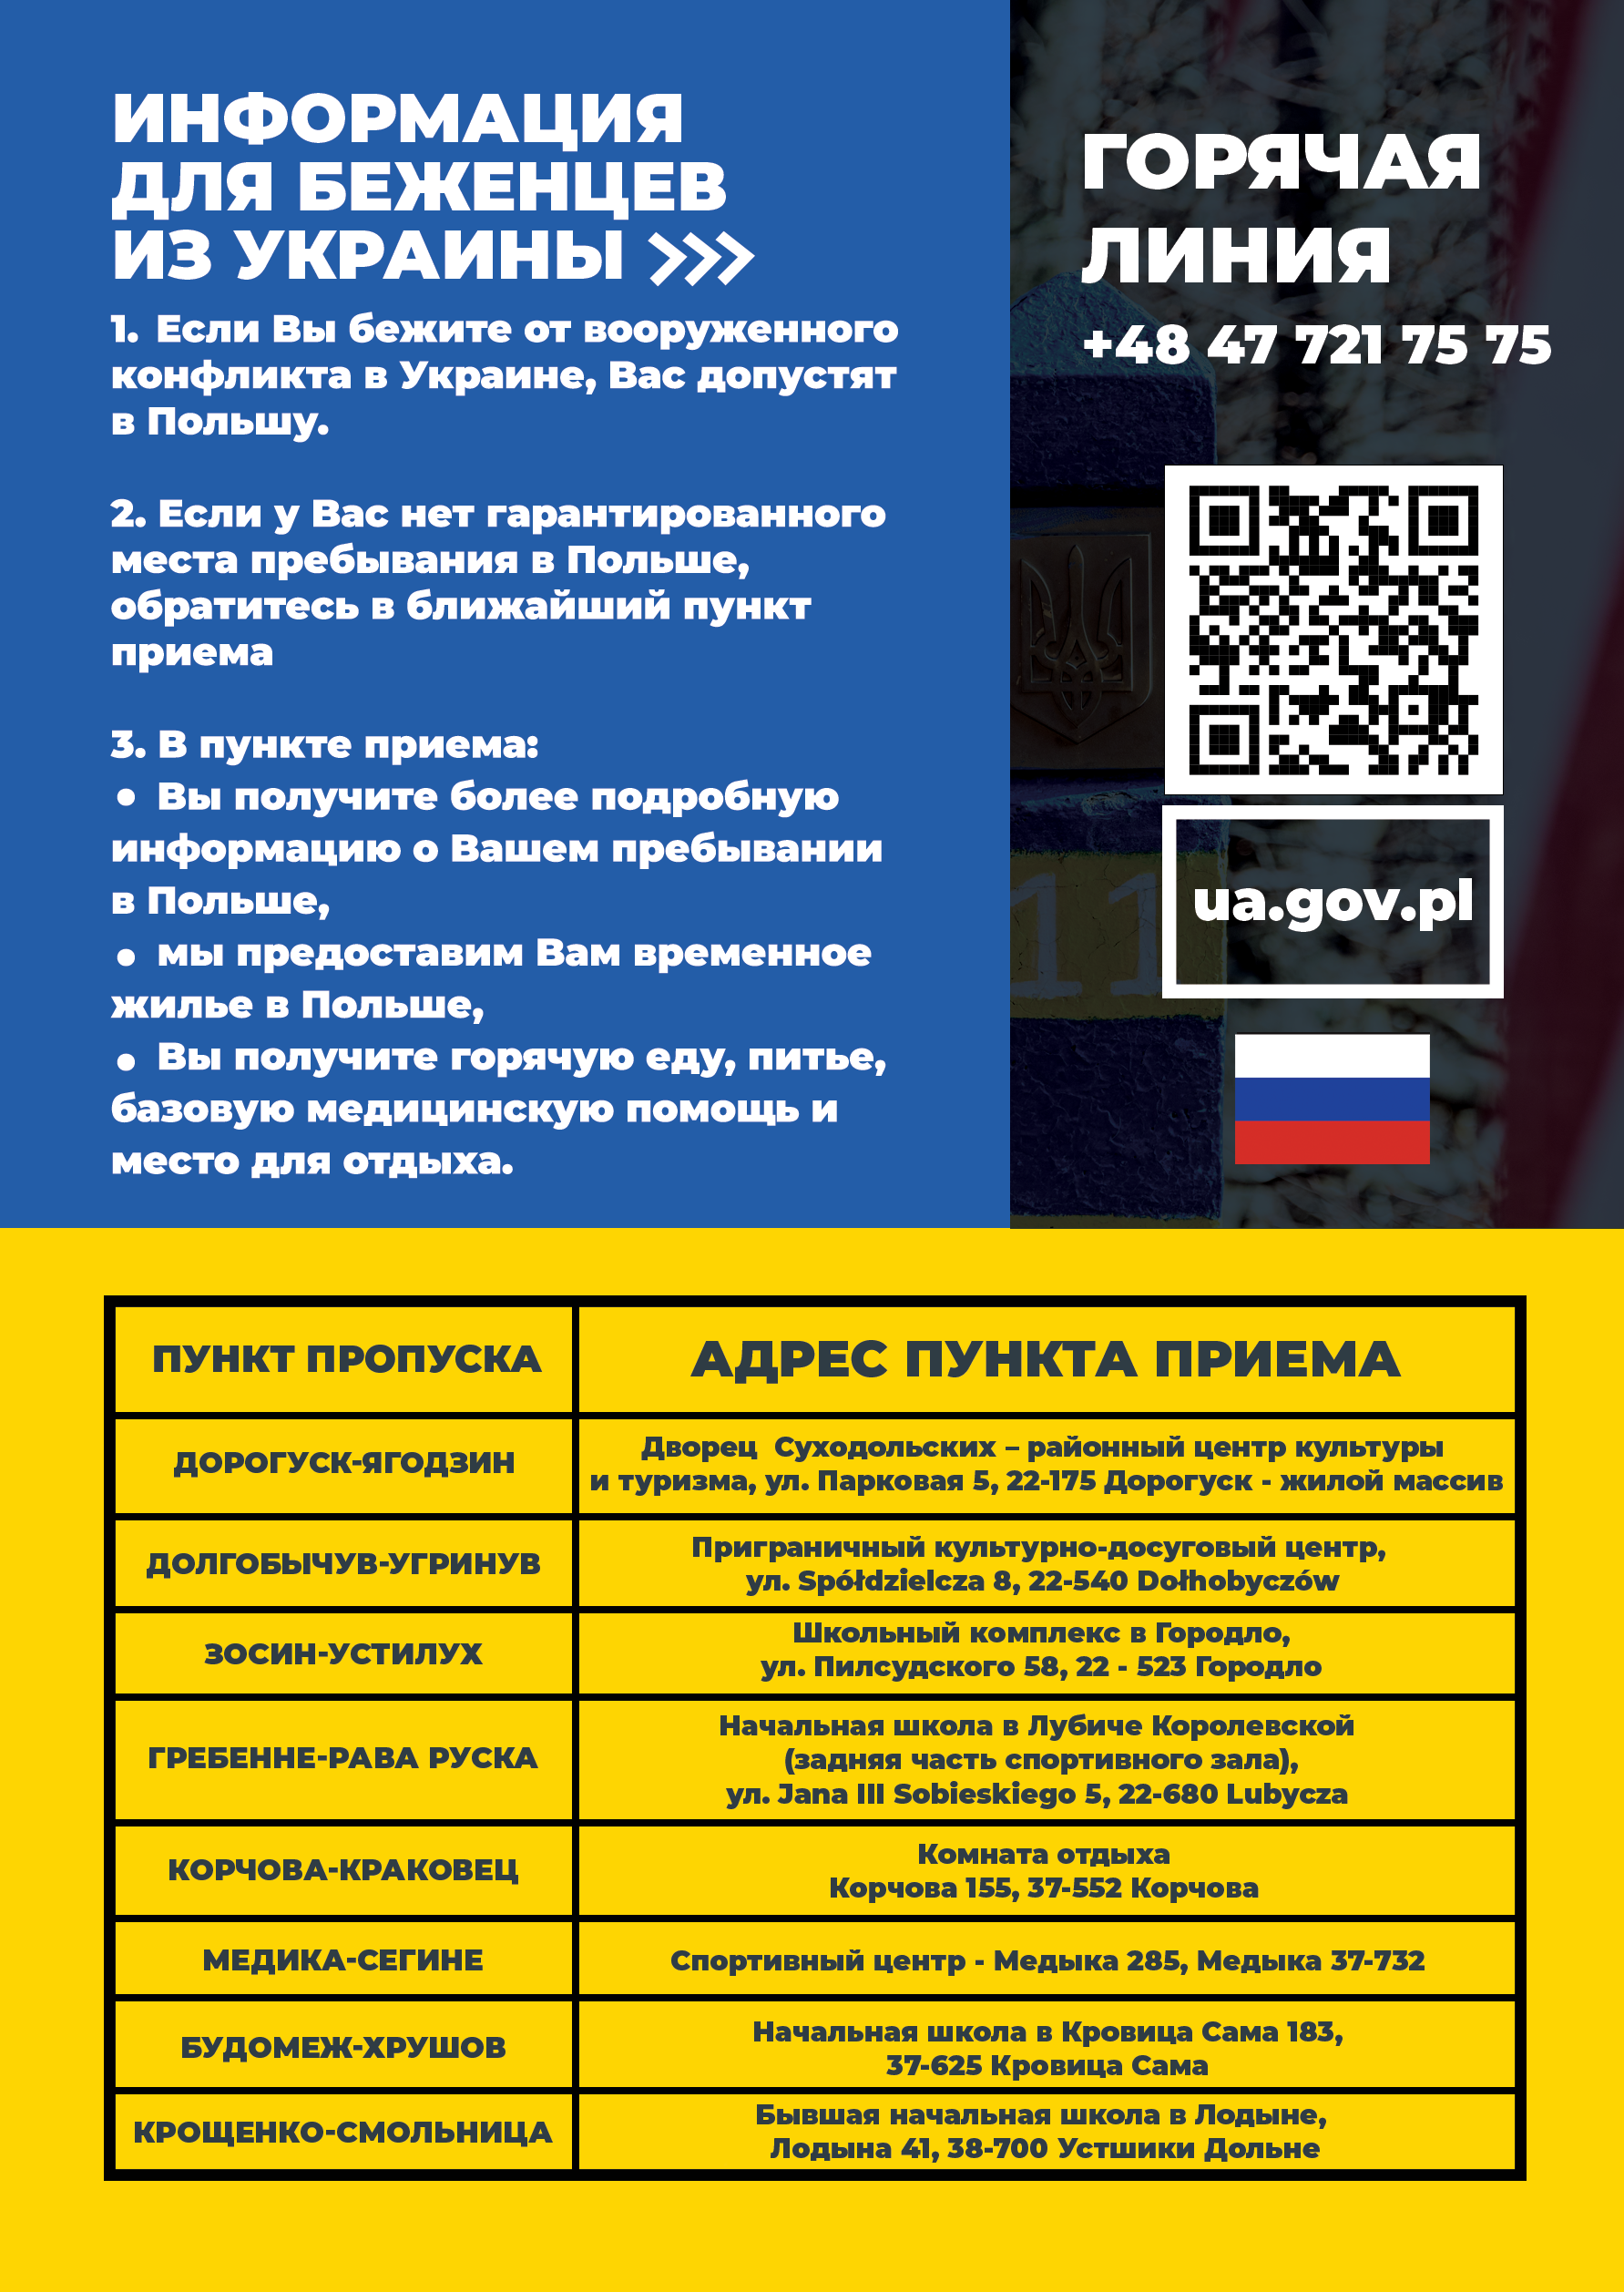 załącznik 4 - informacja w formie plakatu w języku rosyjskim.png (1.11 MB)